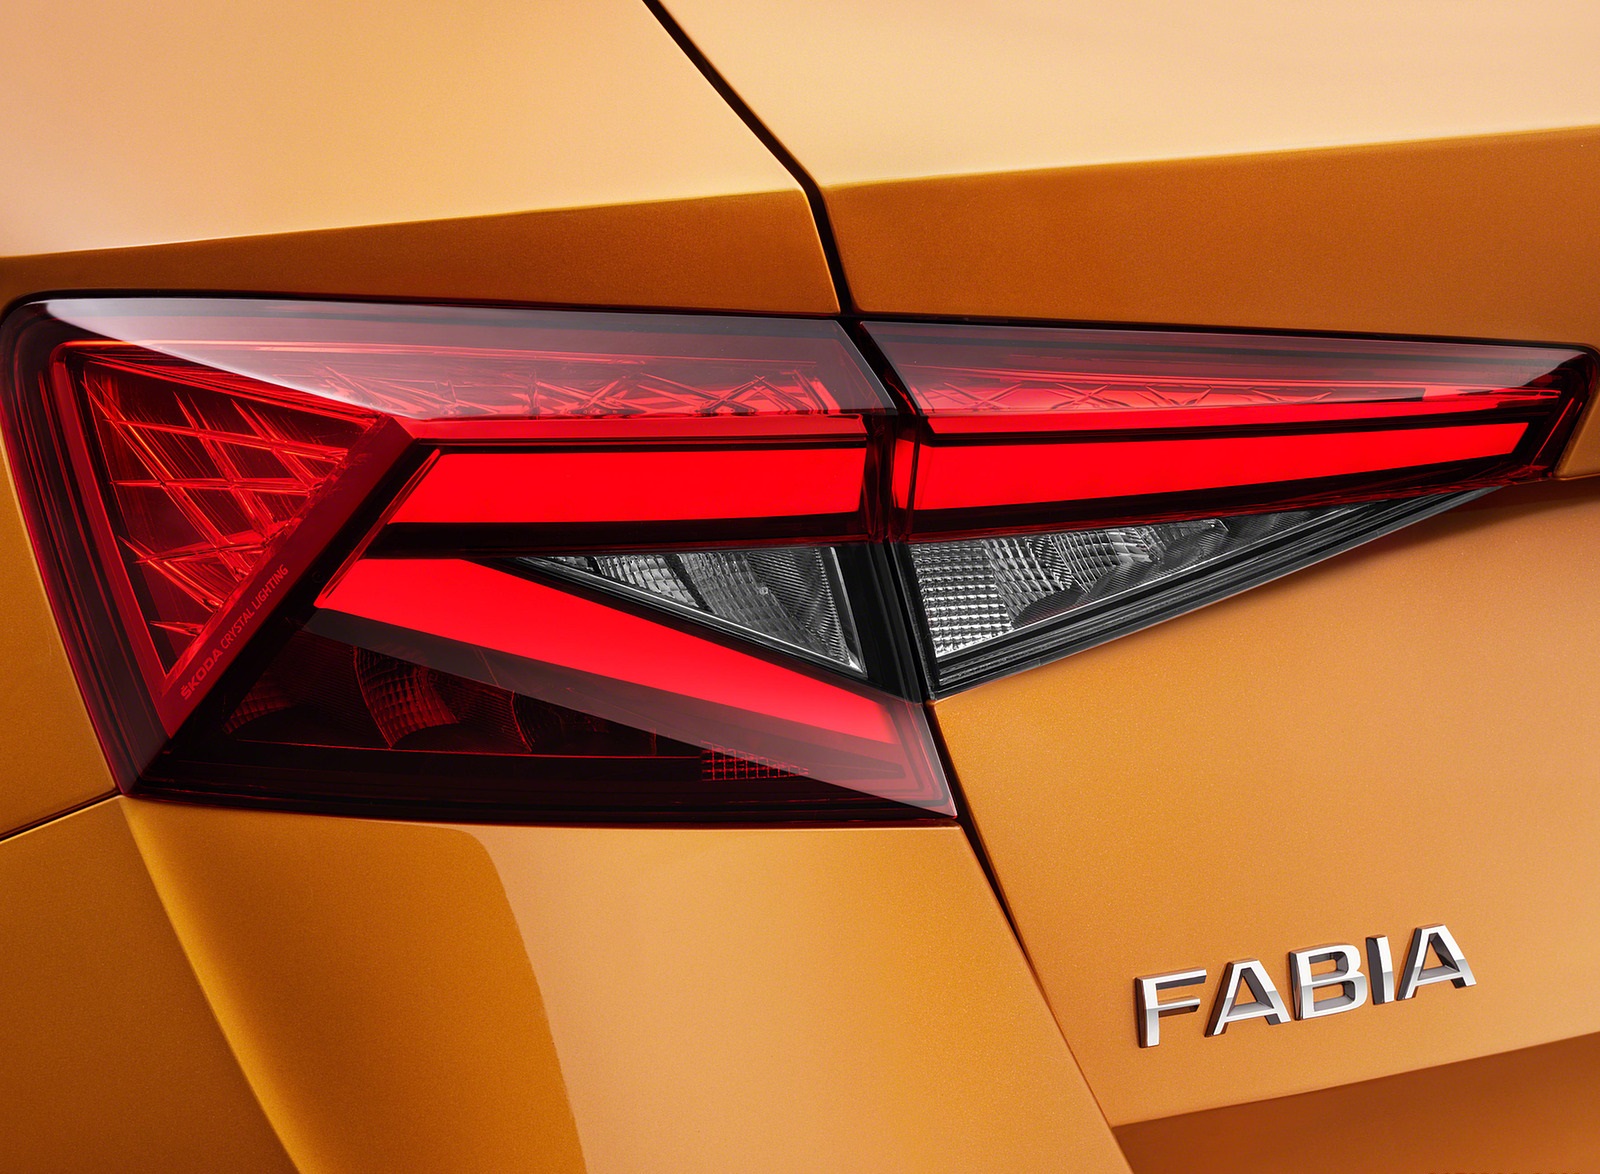 2022 Škoda Fabia Tail Light Wallpapers #22 of 182